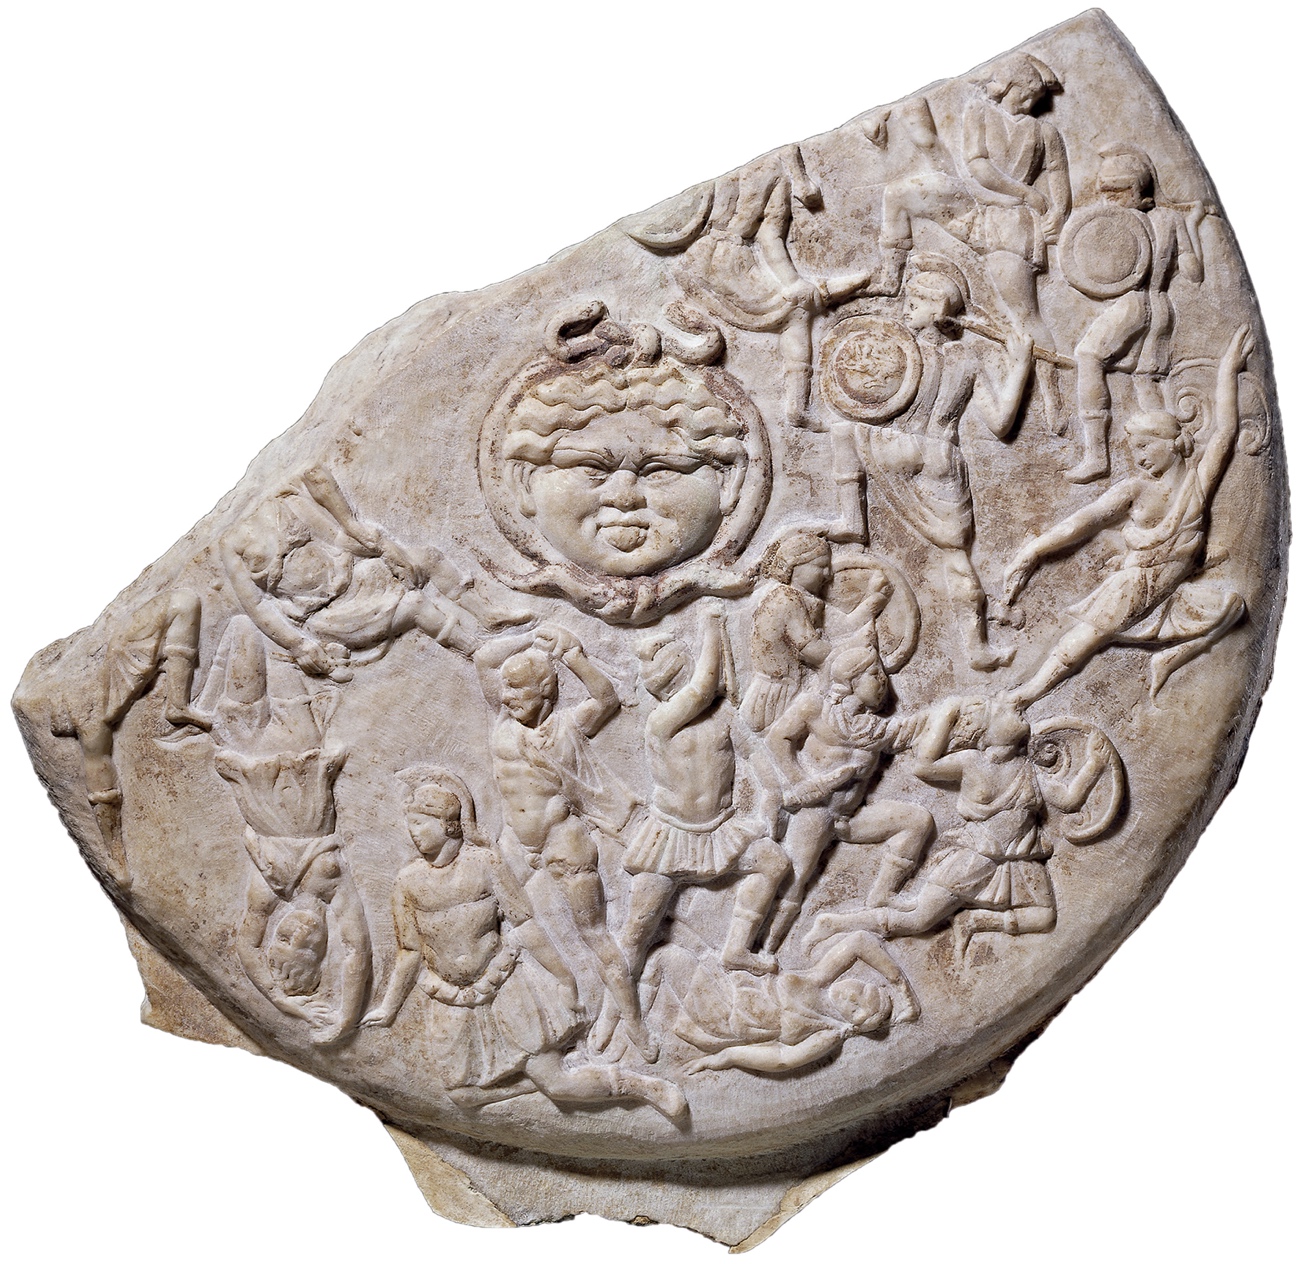 Marbre pentélique, IIIe siècle de notre ère. Londres, British Museum. © The Trustees of the British Museum